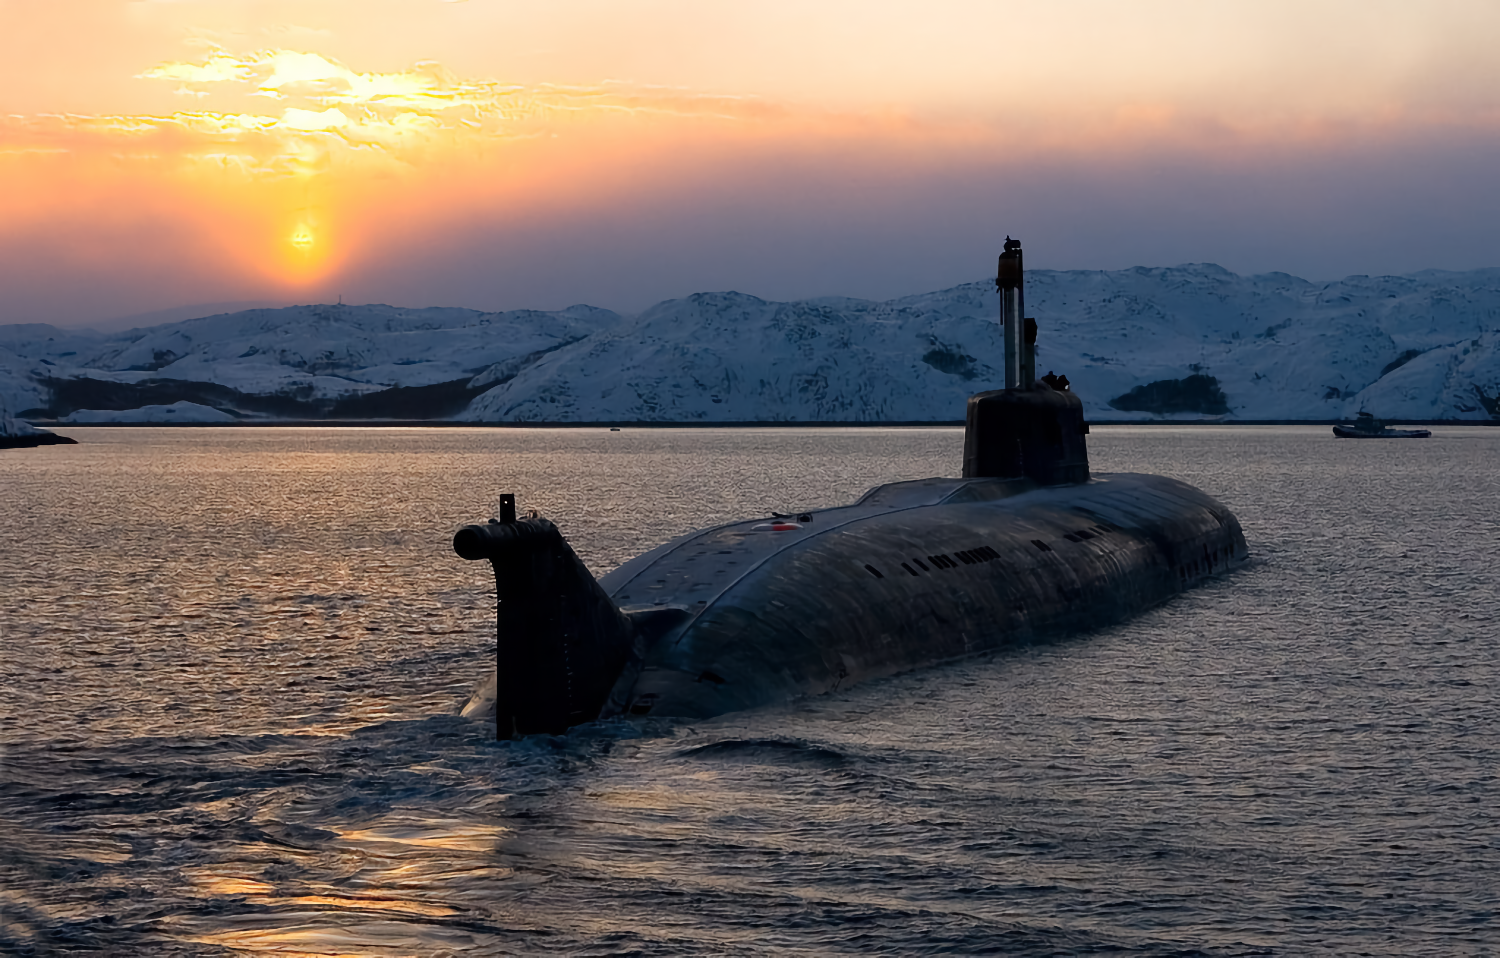 Про подводный флот. АПЛ проекта 949а («Антей») «Иркутск». Подводная лодка 949а Антей. Атомная подводная лодка к-266 «Орел». Атомная подводная лодка Северного флота.